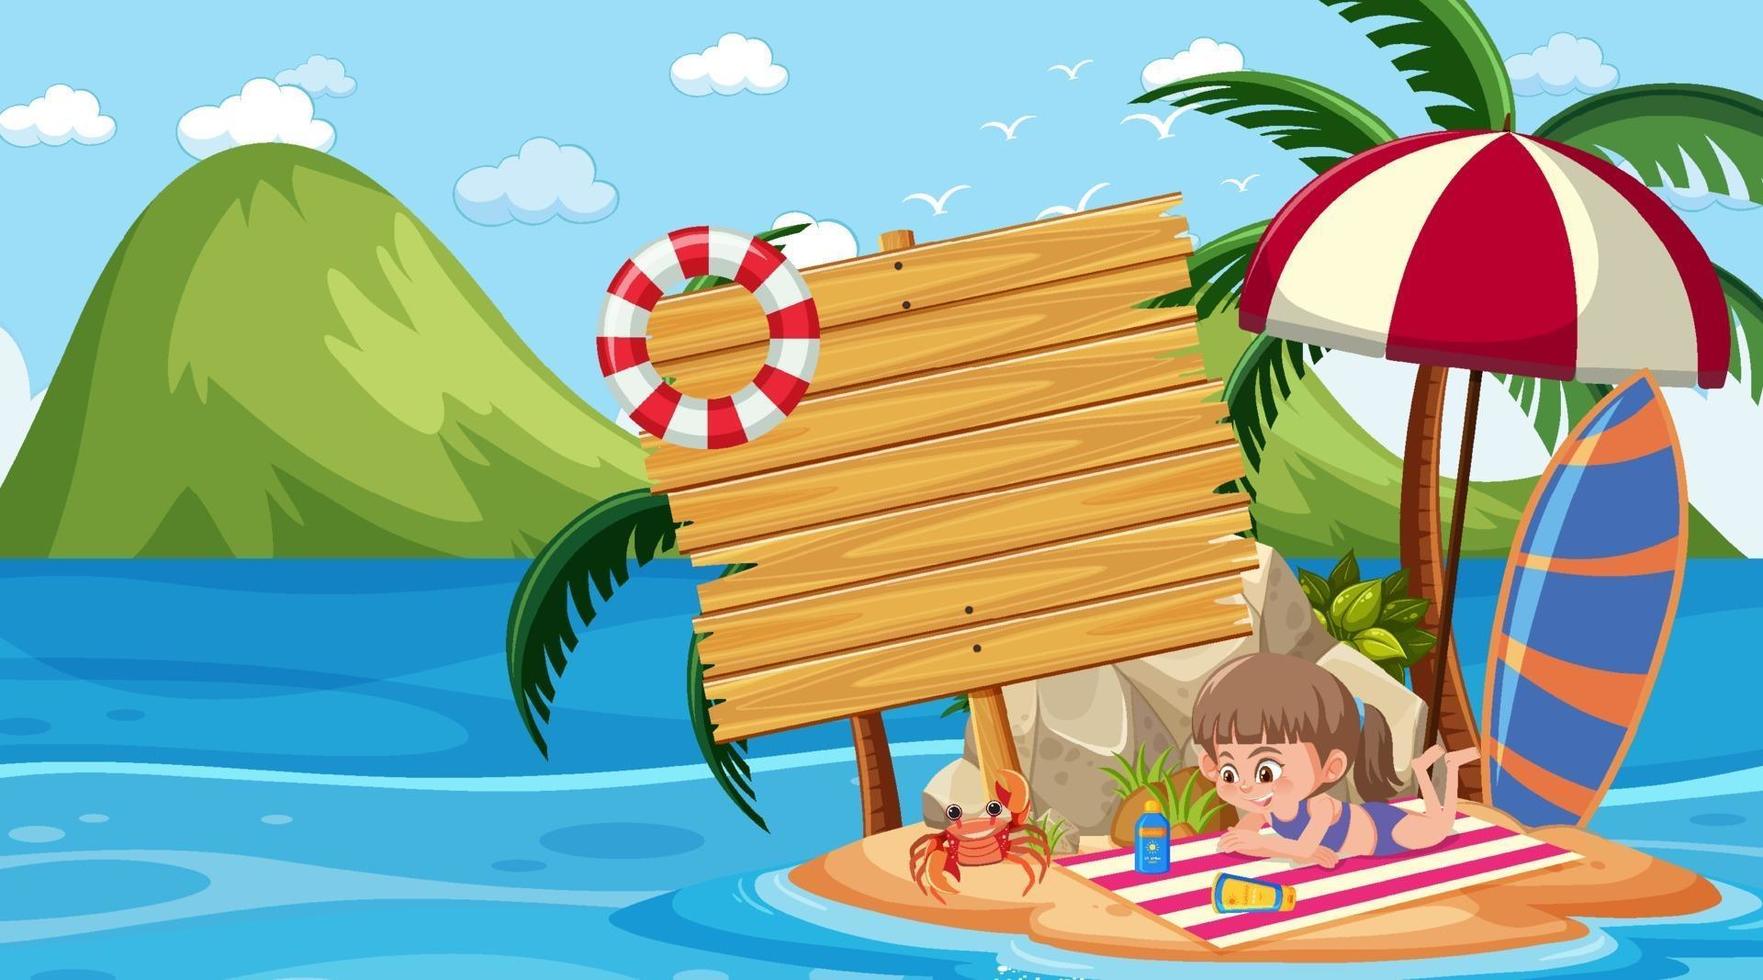 enfants en vacances à la plage, scène de jour avec une bannière vide vecteur